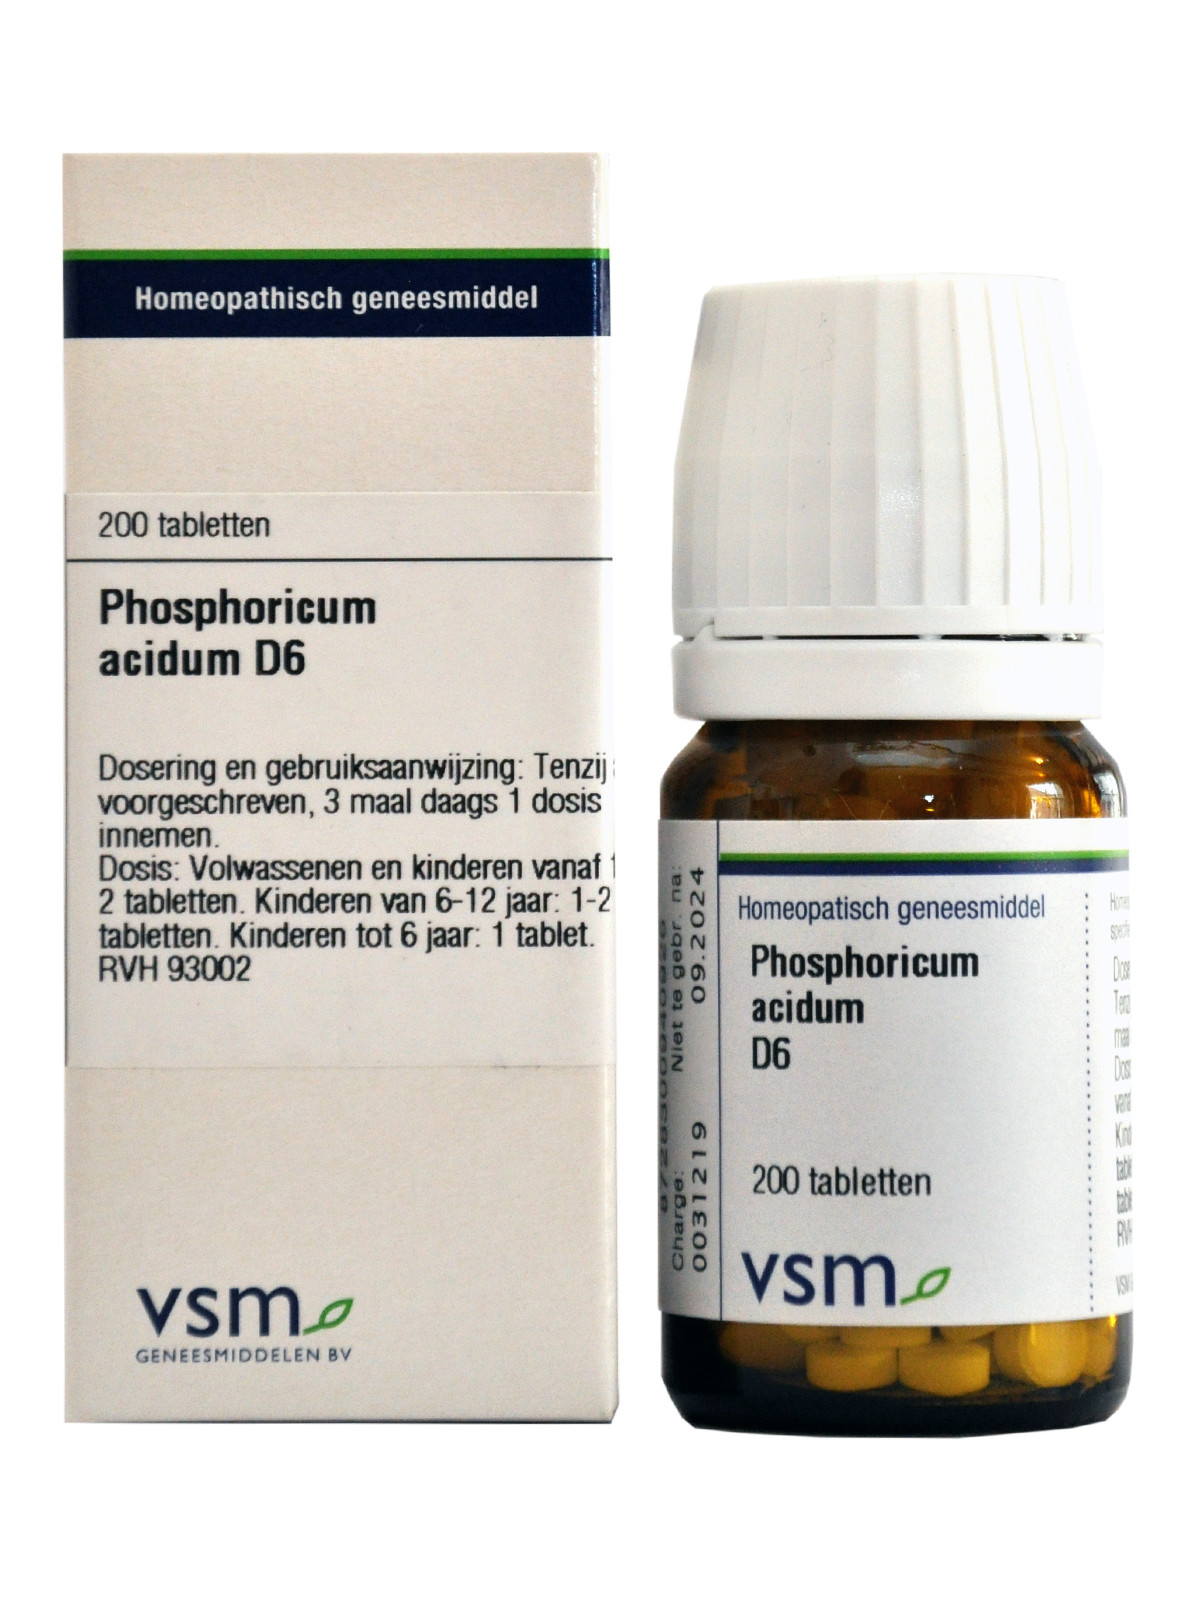 Phosphoricum acidum D6 tabletten